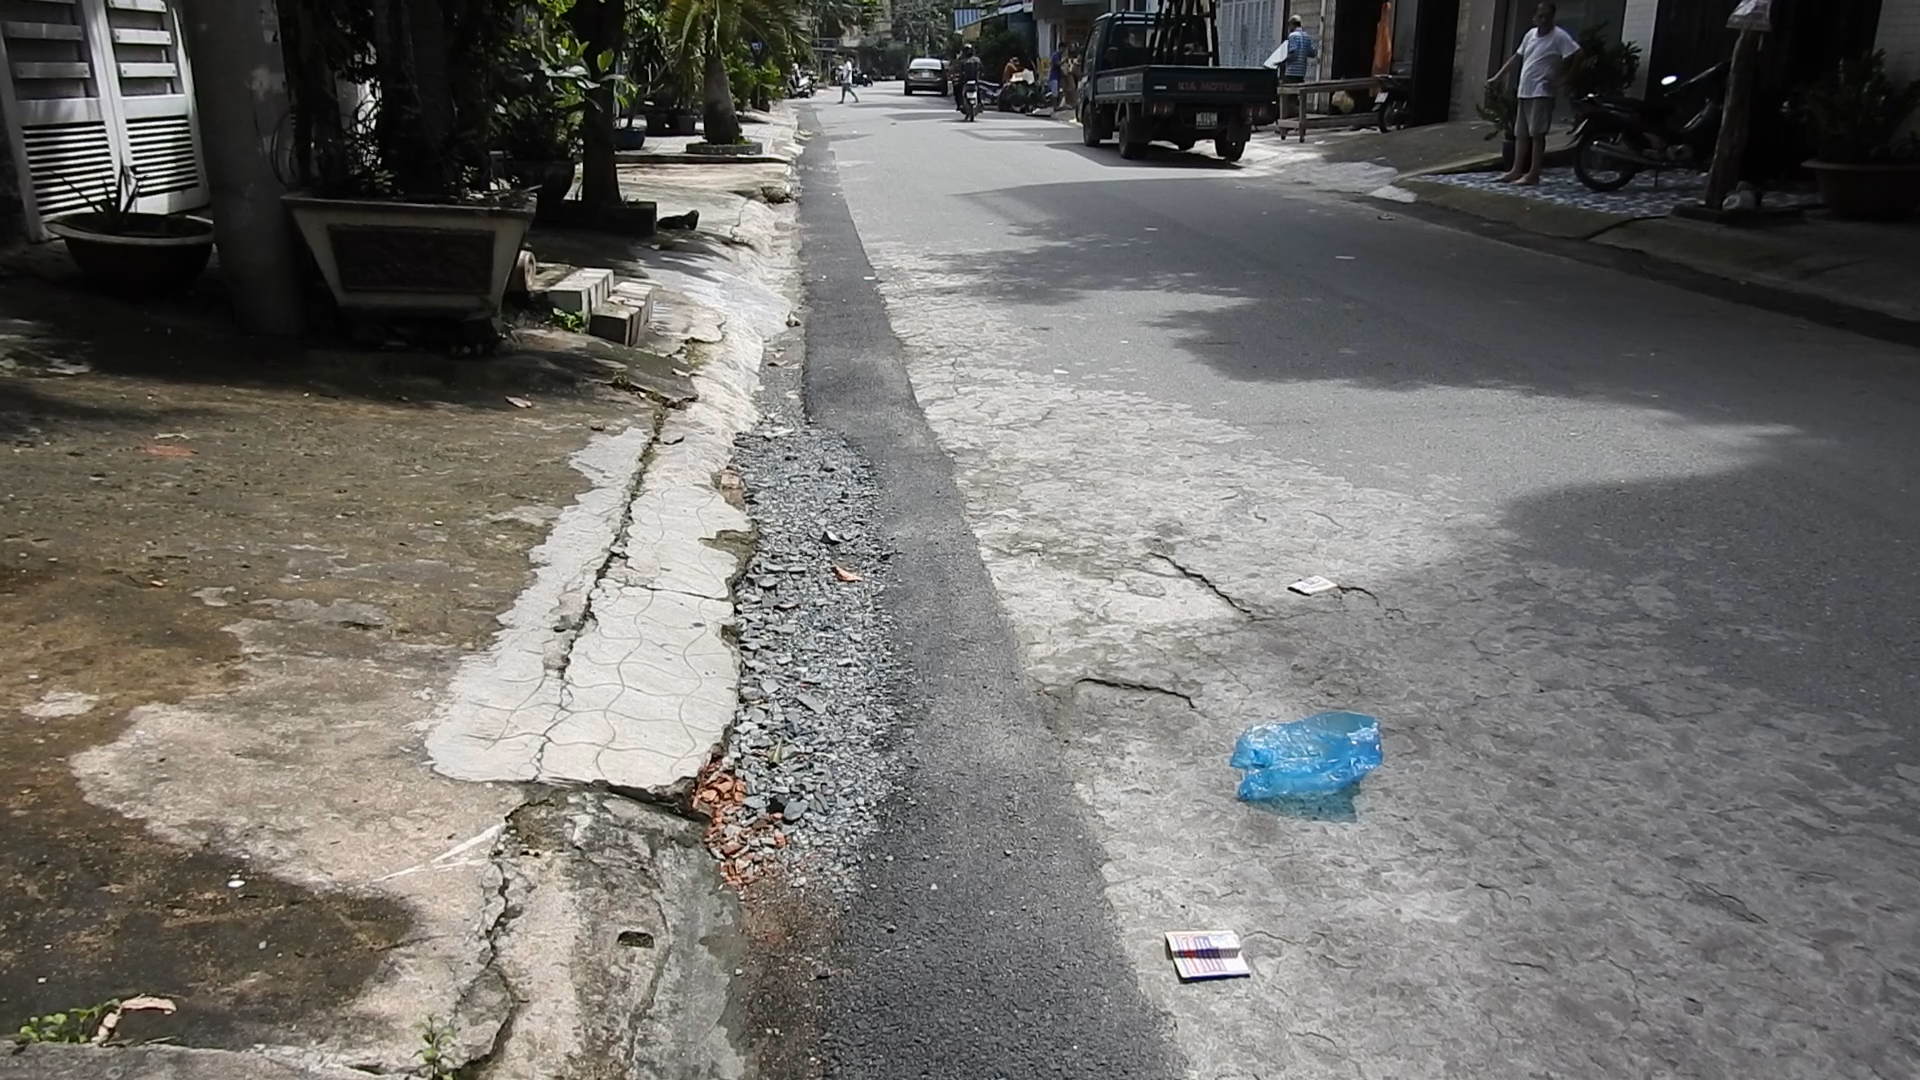 Công ty CP Cấp nước Gia Định: Đào đường ẩu, gây nguy hiểm cho người đi đường - Hình 1